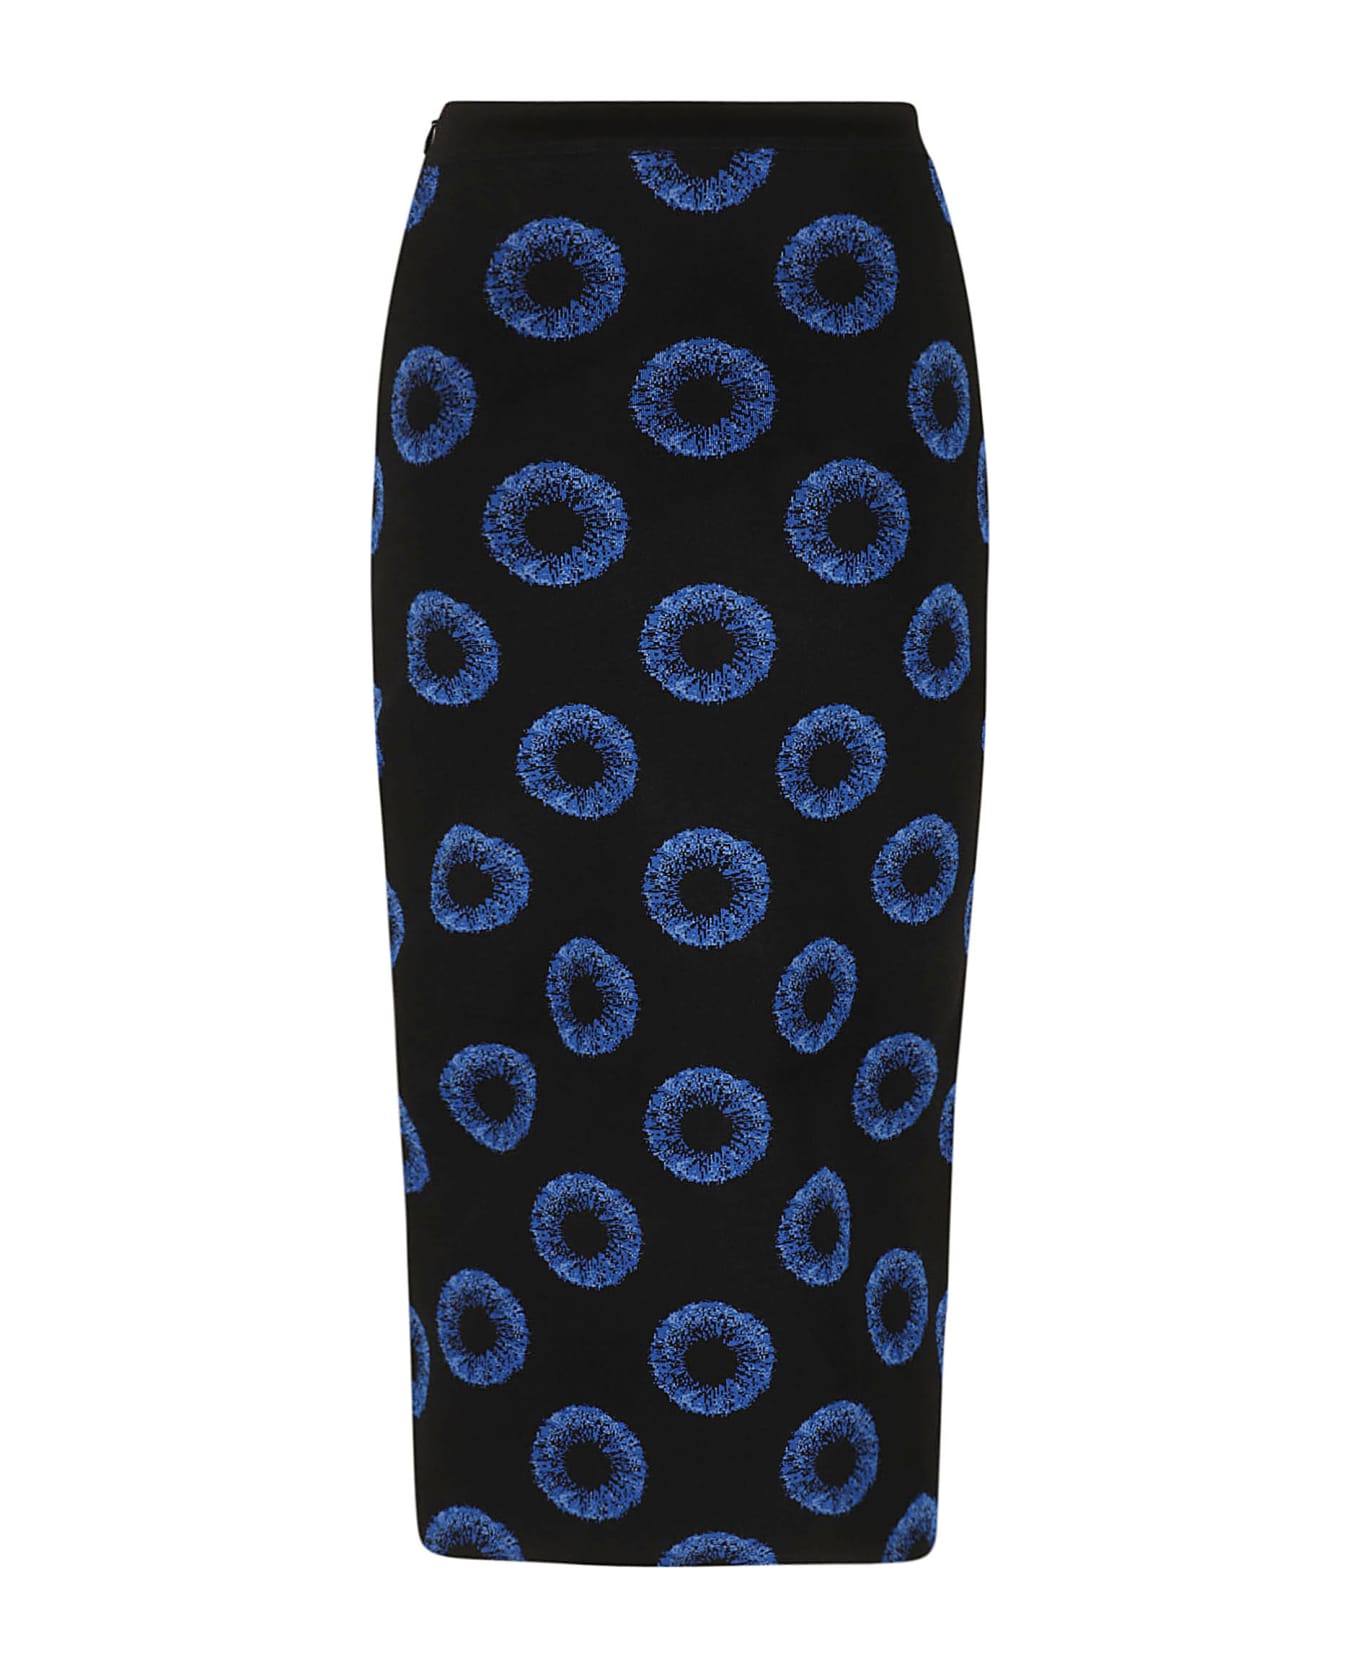 Alexander McQueen Iris Jacquard Knit Pencil Skirt - Black/Blue スカート